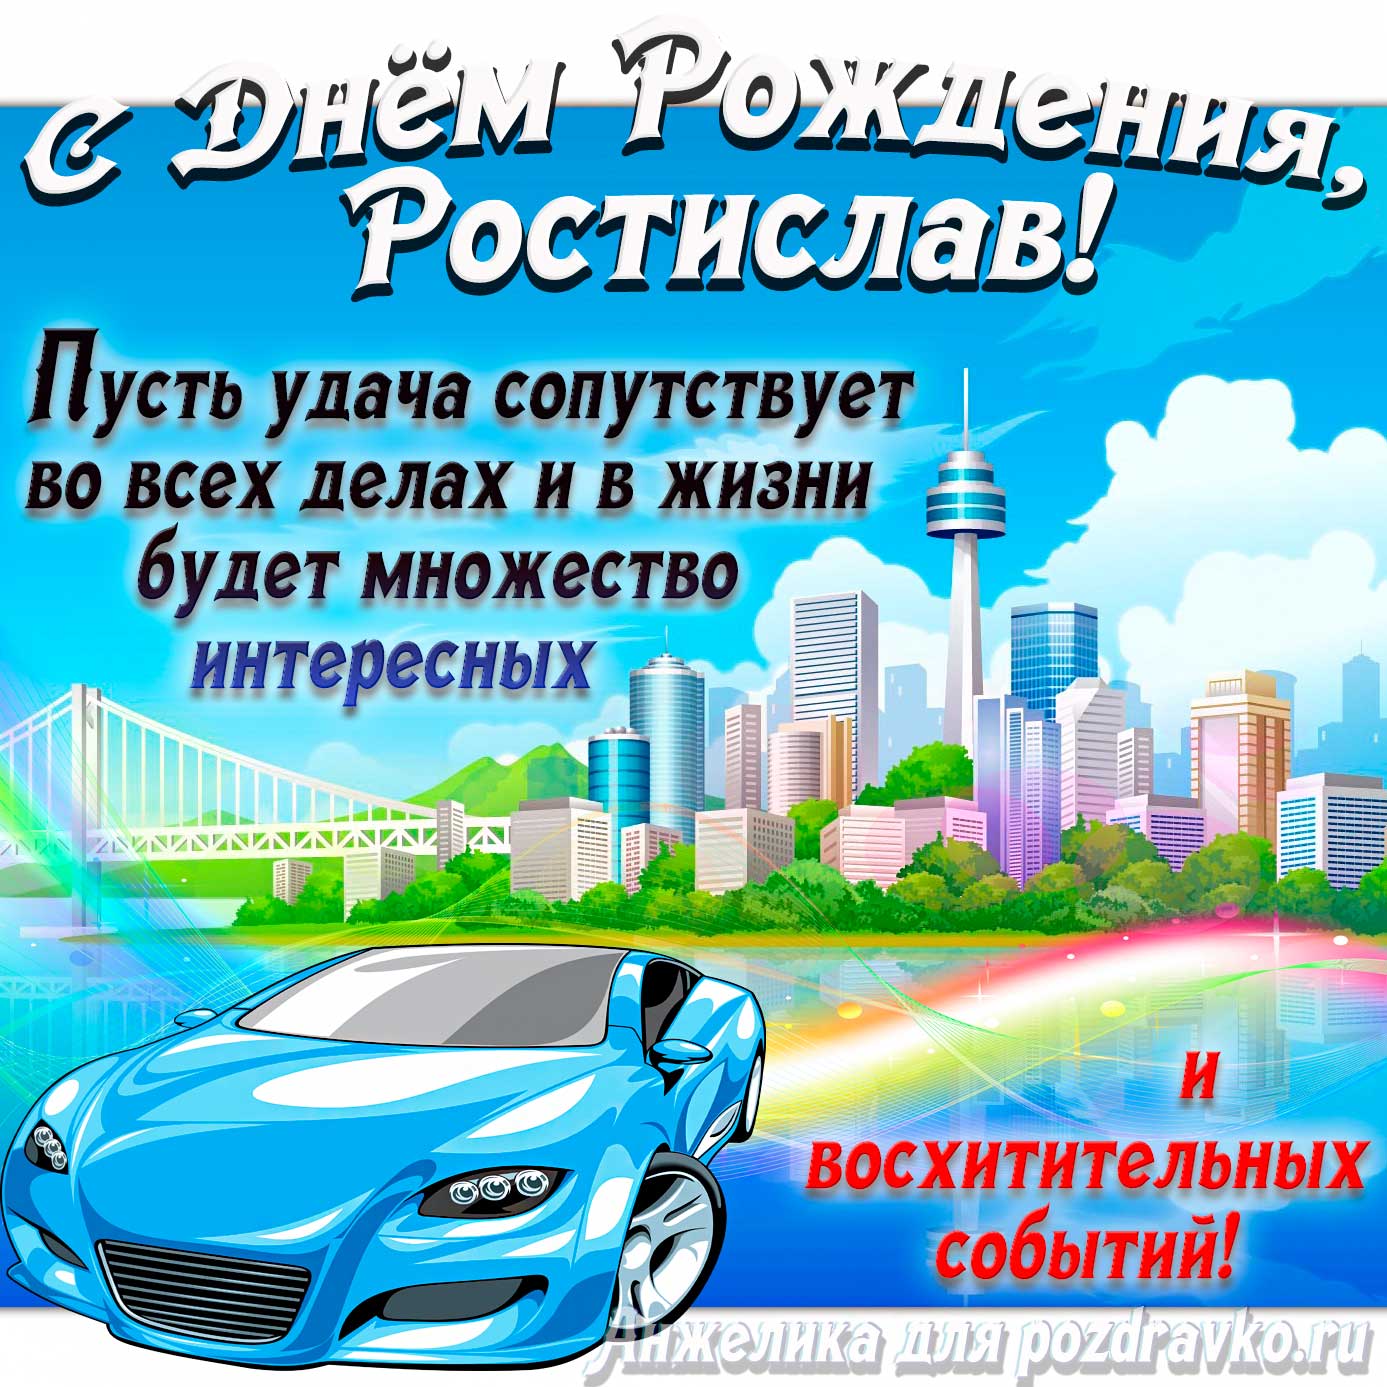 Открытка - с Днём Рождения Ростислав с голубой машиной и пожеланием. Скачать бесплатно или отправить картинку.